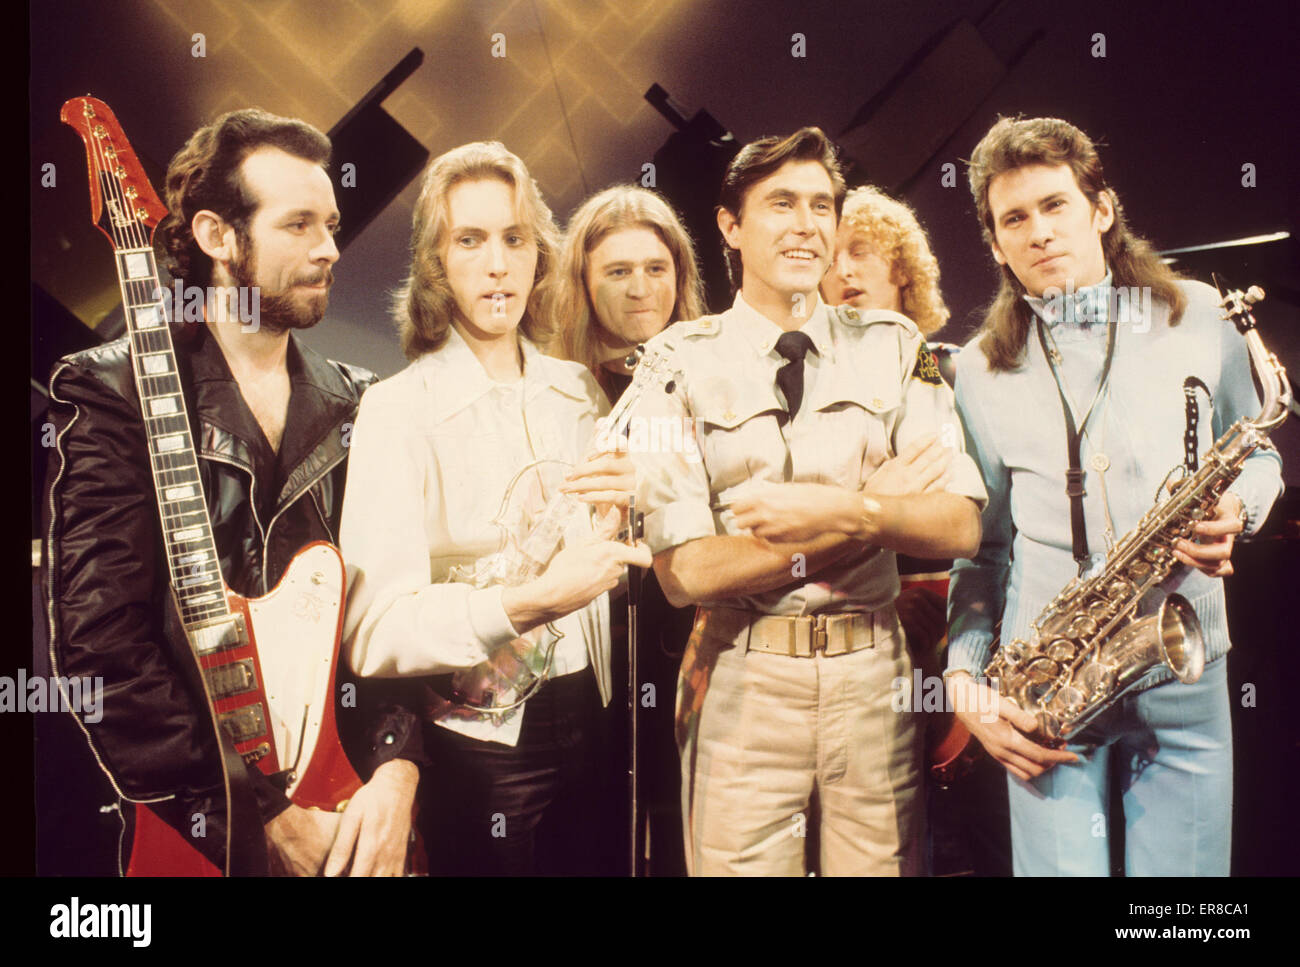 ROXY MUSIC UK rock group à propos de 1975 Banque D'Images